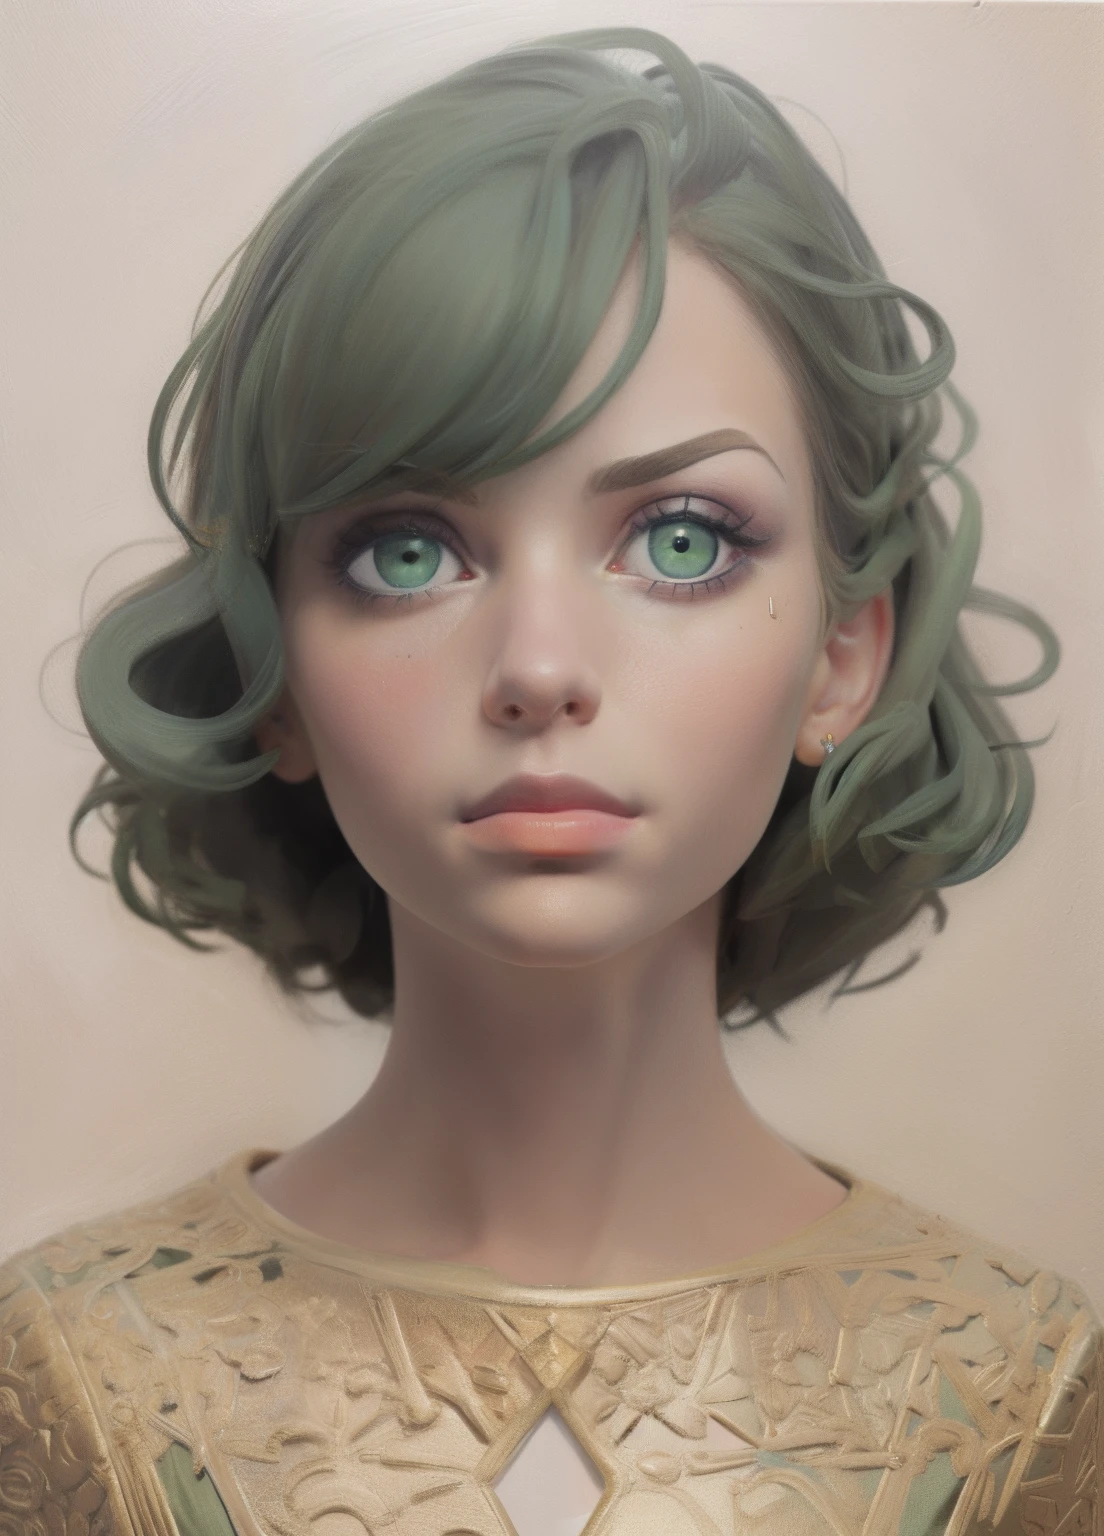 1人の女の子, 肖像画, 油絵, モダンな, 現実的な比率, 濃い緑色の目, 美しい顔, 左右対称の顔, 左右対称の目, ダイナミックなポーズ, 複雑な, 複雑な details, シャープなフォーカス